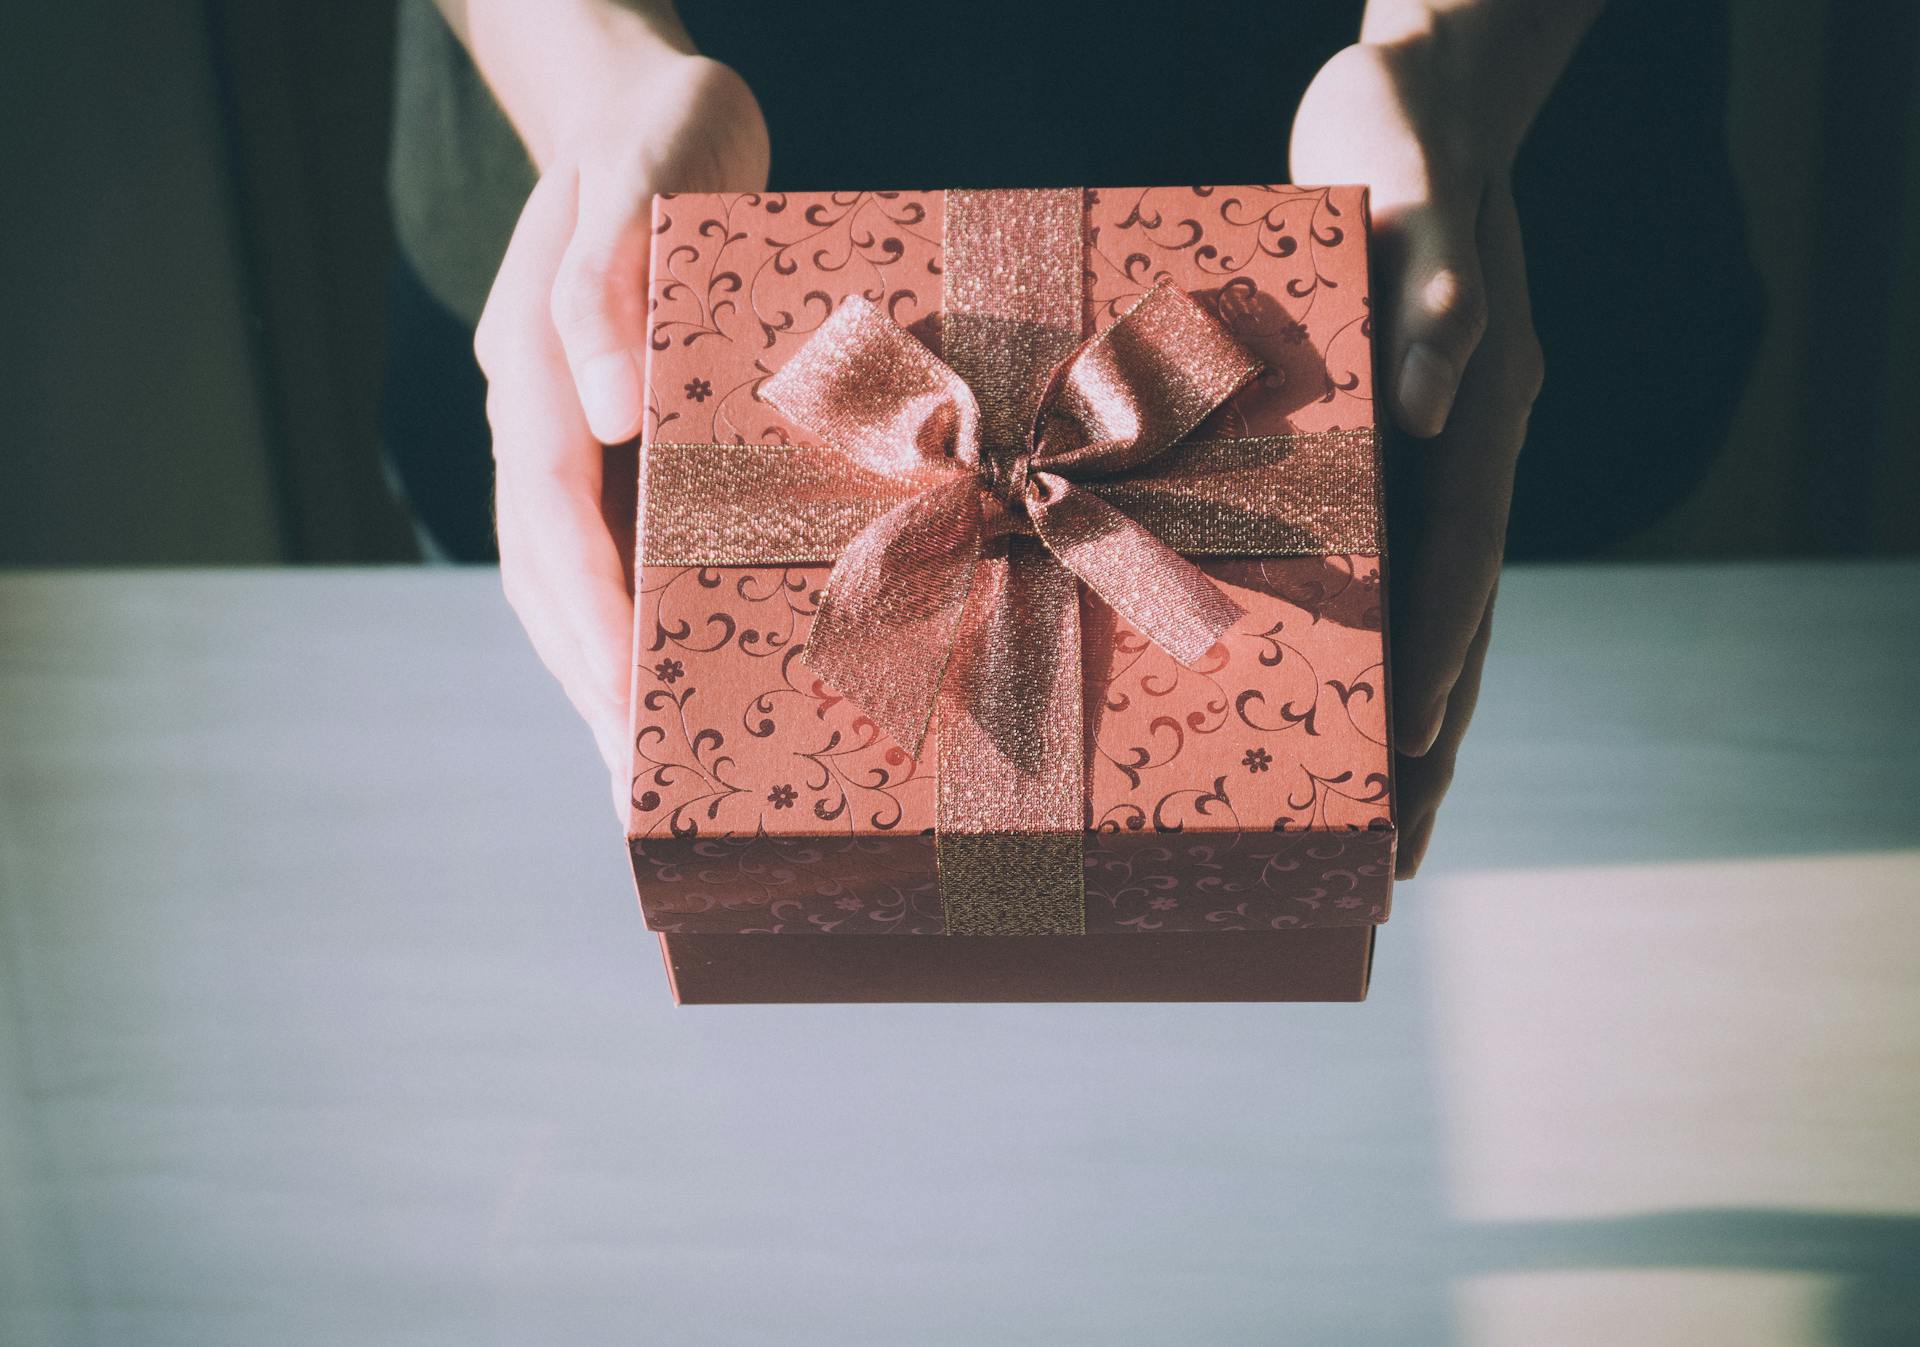 Eine Person hält eine Geschenkbox | Quelle: Pexels